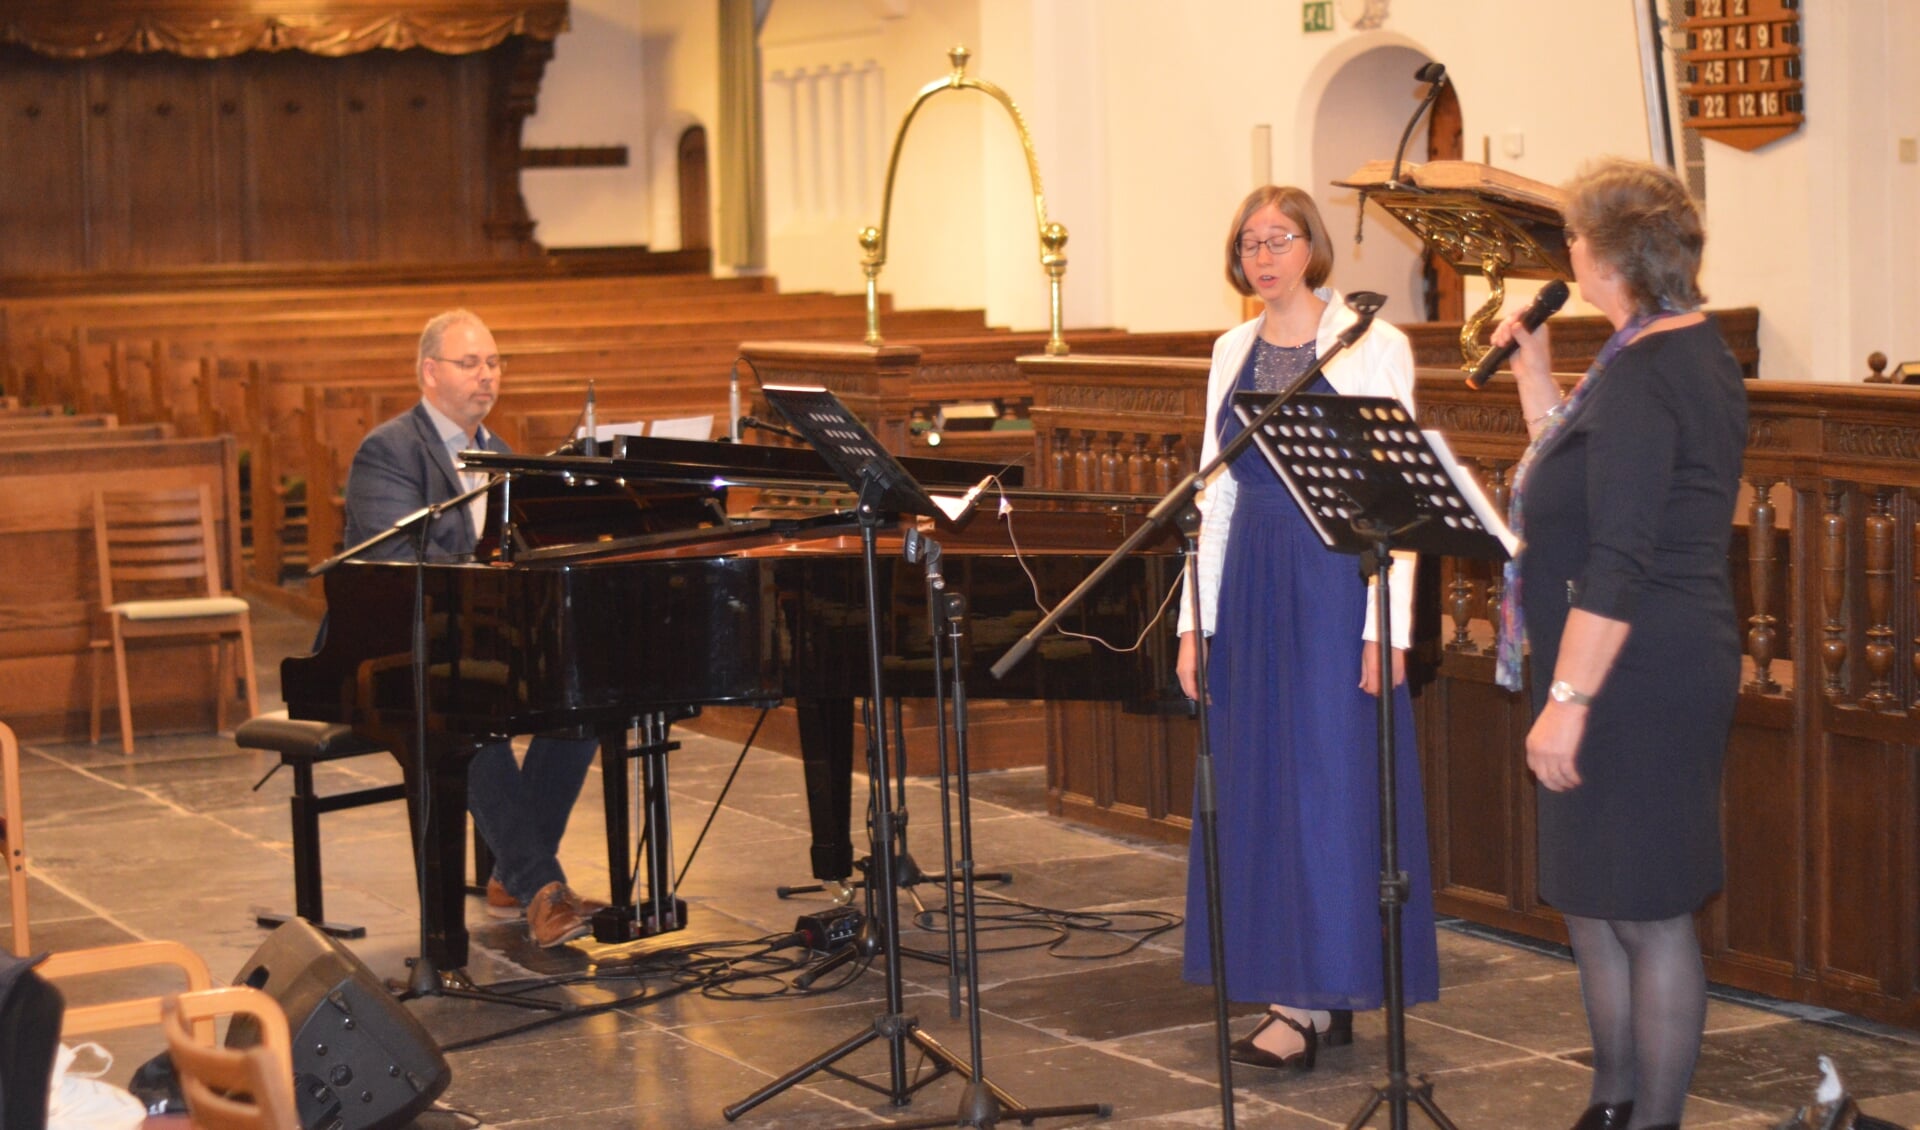 Bezinningsavond afgelopen maandag in de Oude Kerk in Barneveld, met van links naar rechts: Wim de Graaf, Judith Boluijt en Ans Blaauwendraad.